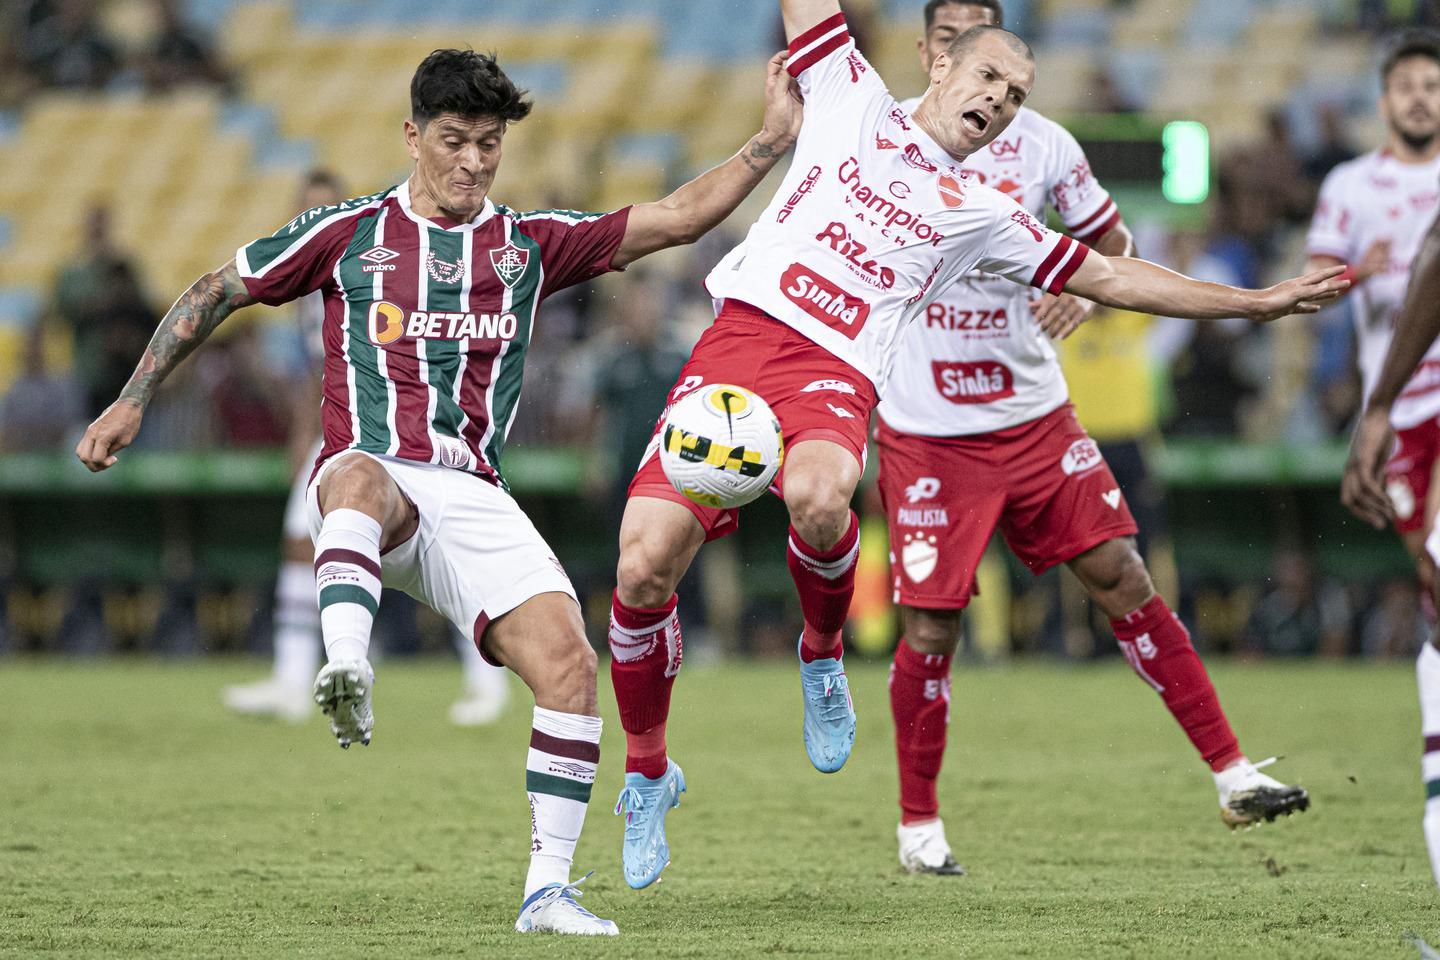 Com empate, Vila Nova aumenta jejum de vitórias no Serra Dourada